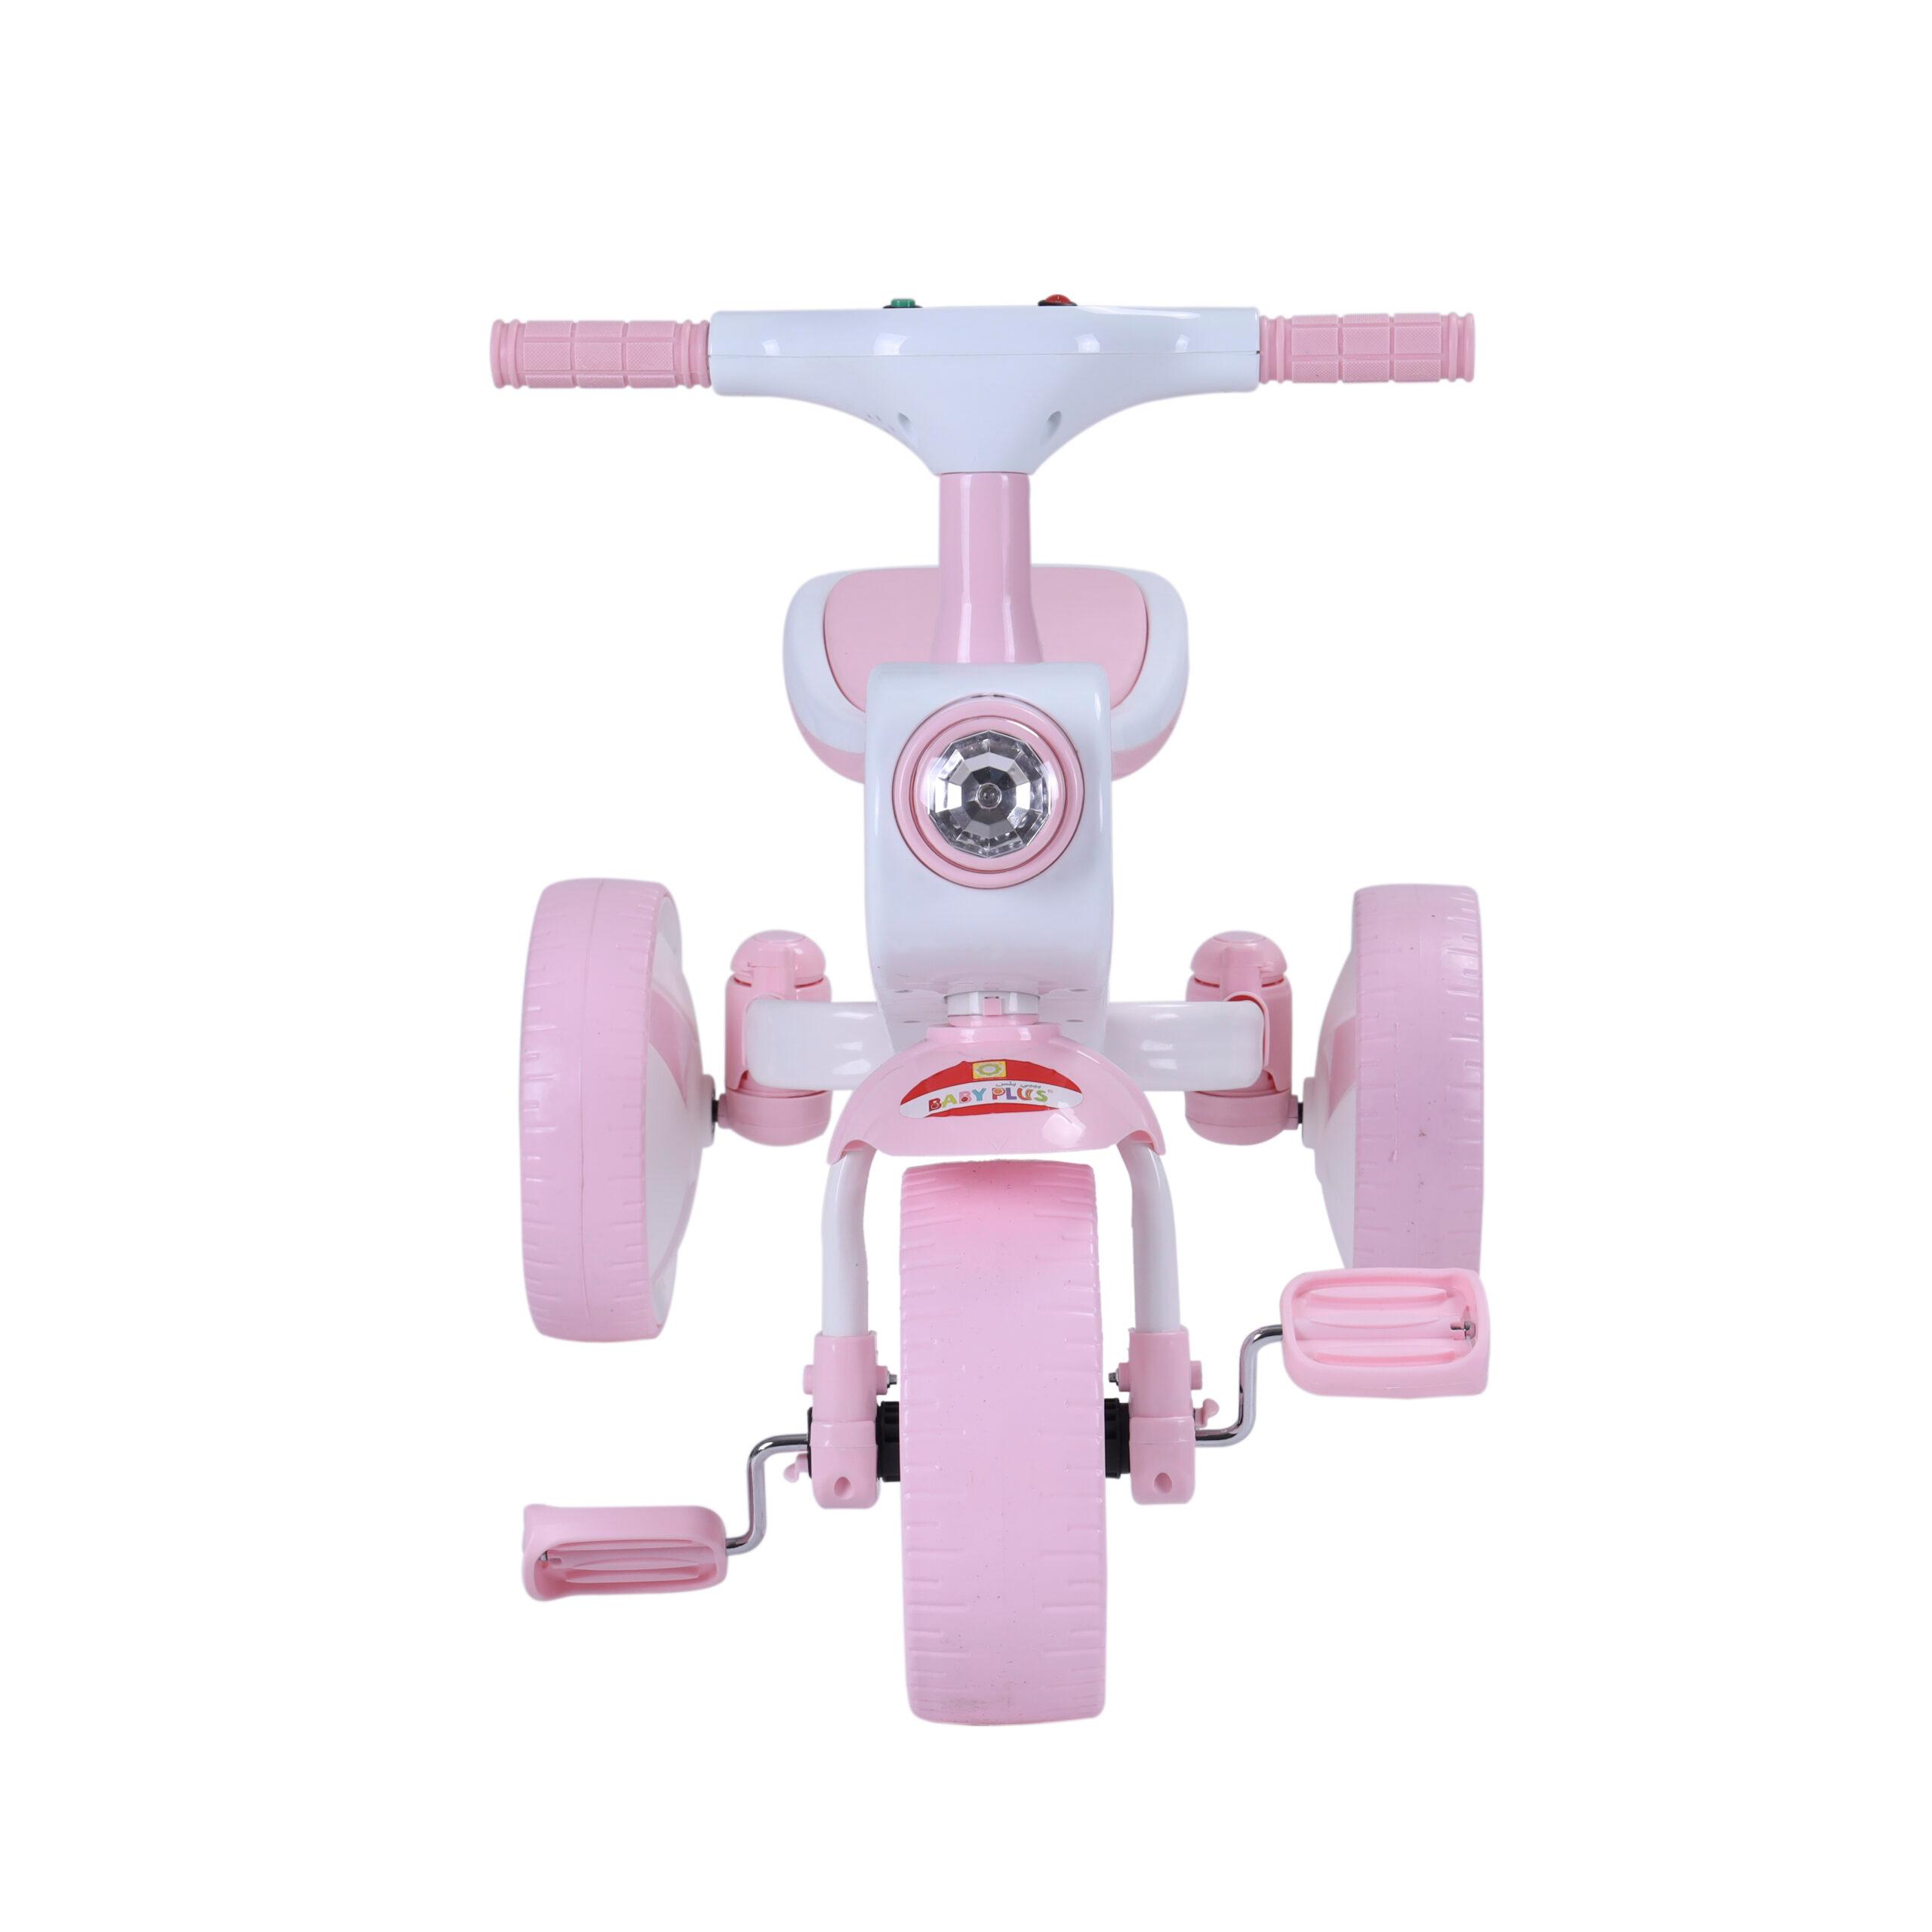 دراجة هوائية للأطفال زهري Tricycle - Ideal For Kids Age 1, Children'S - Baby Plus